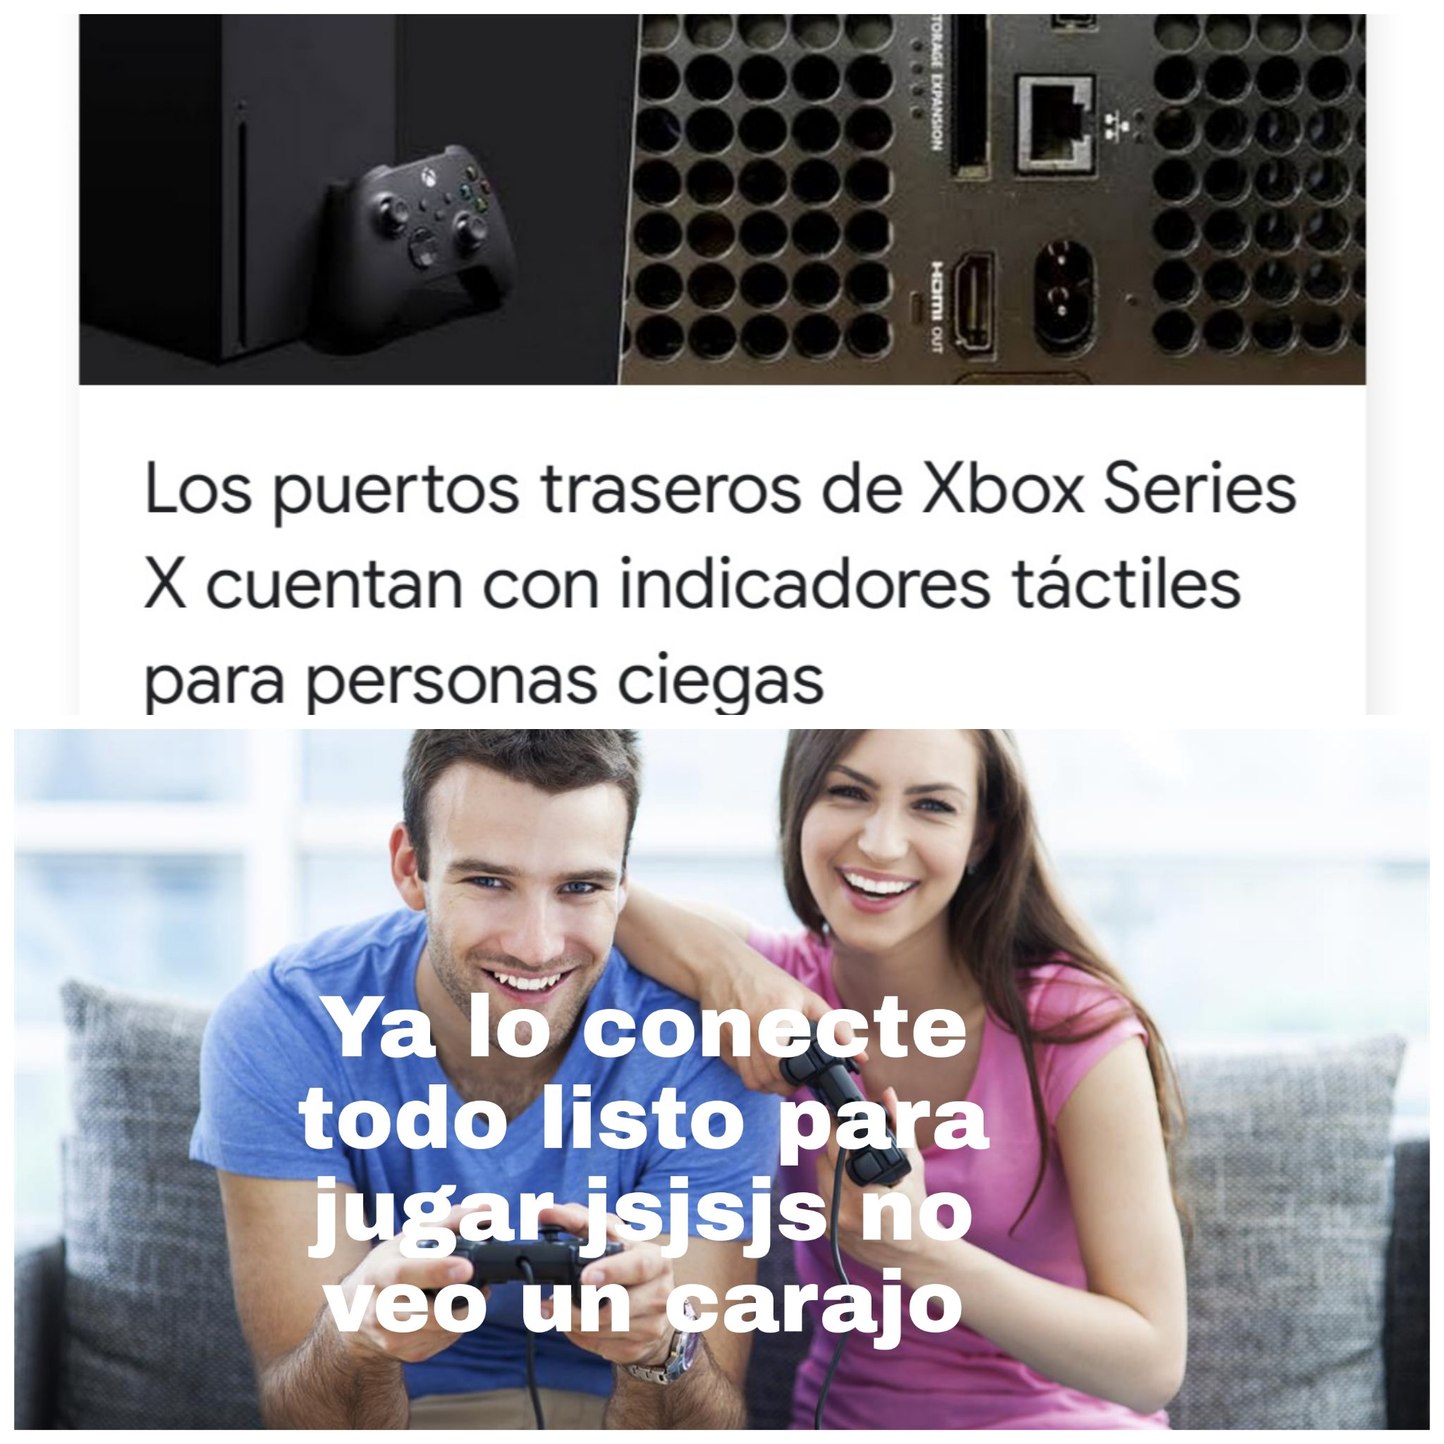 Ya se los mandos no son de Xbox - meme